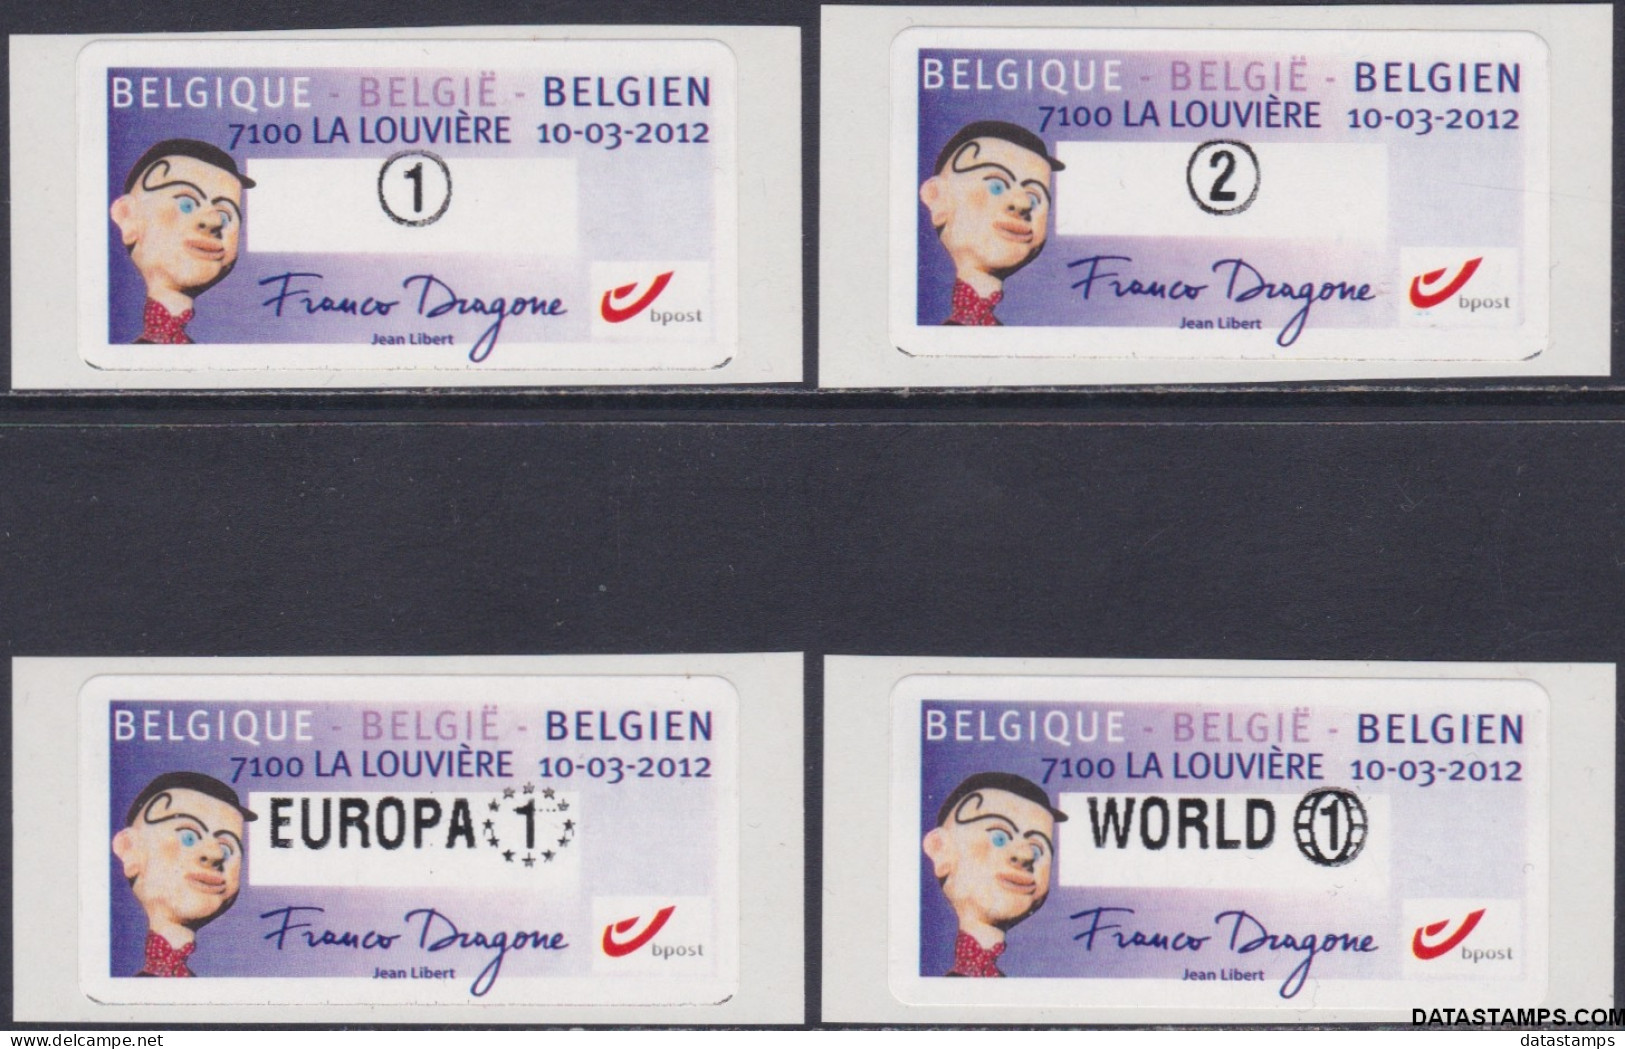 België 2012 - Mi:autom 80, Yv:TD 88, OBP:ATM 137 S13, Machine Stamp - XX - Free Dragone Jean Libert - Mint